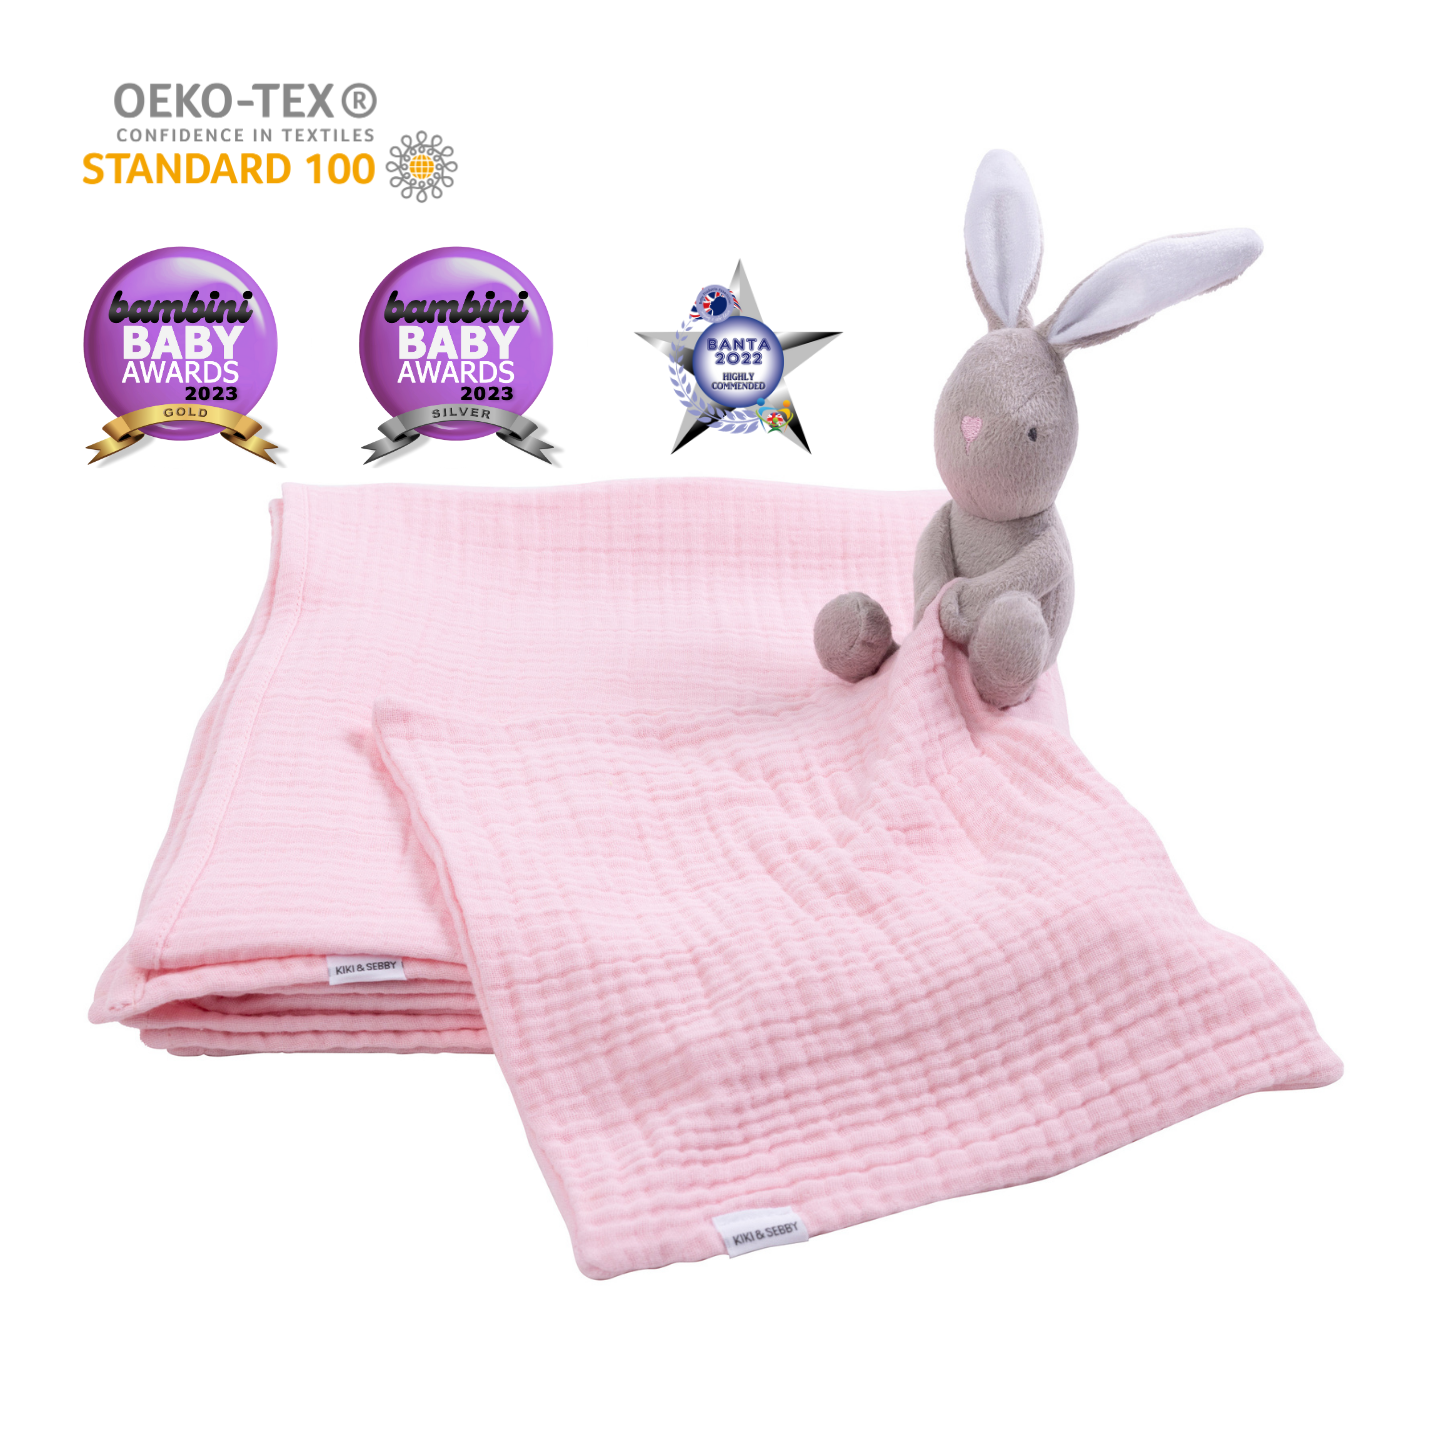 Kiki and Sebby Bunny Comforter (Pink Muslin)